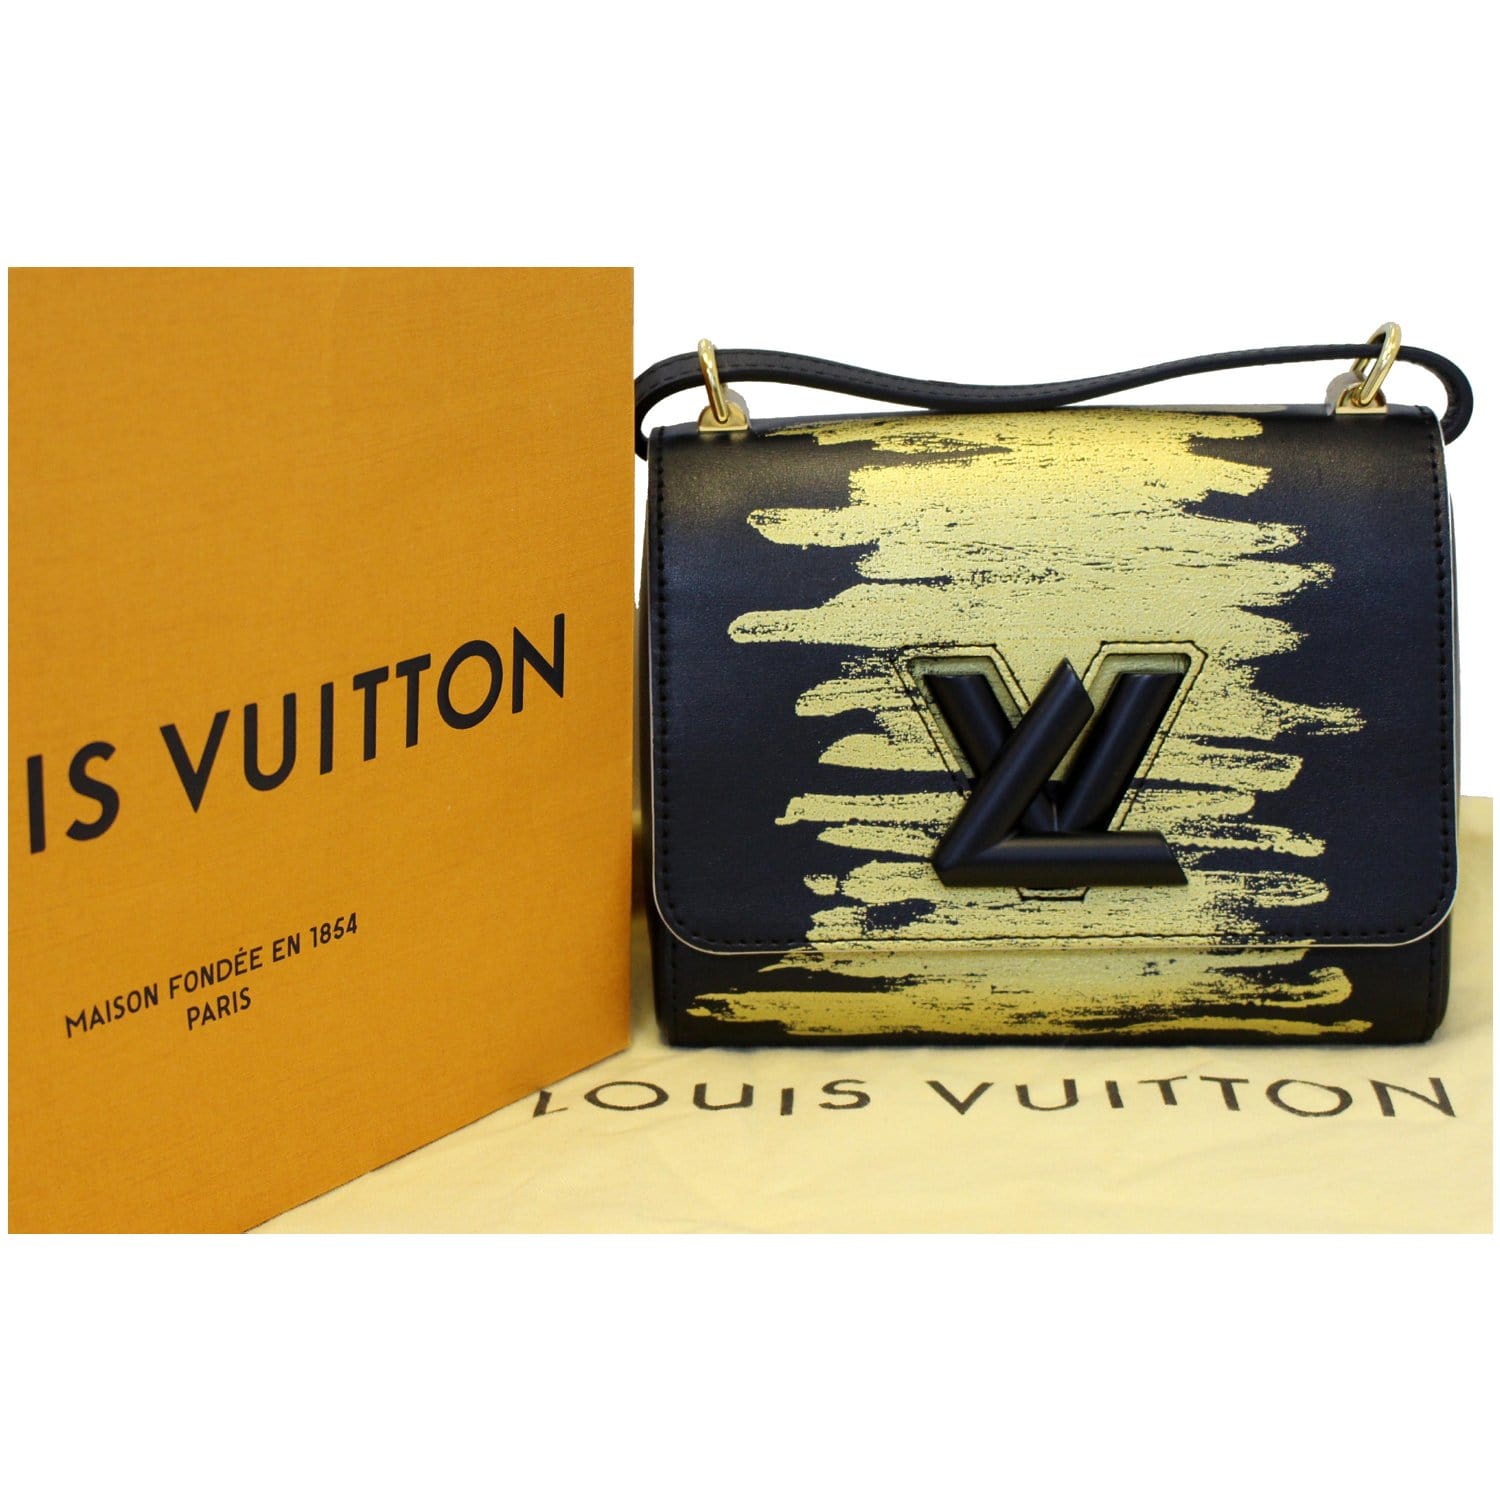 LOUIS VUITTON Twist PM Calfskin Leather Crossbody Bag Light Gold-US